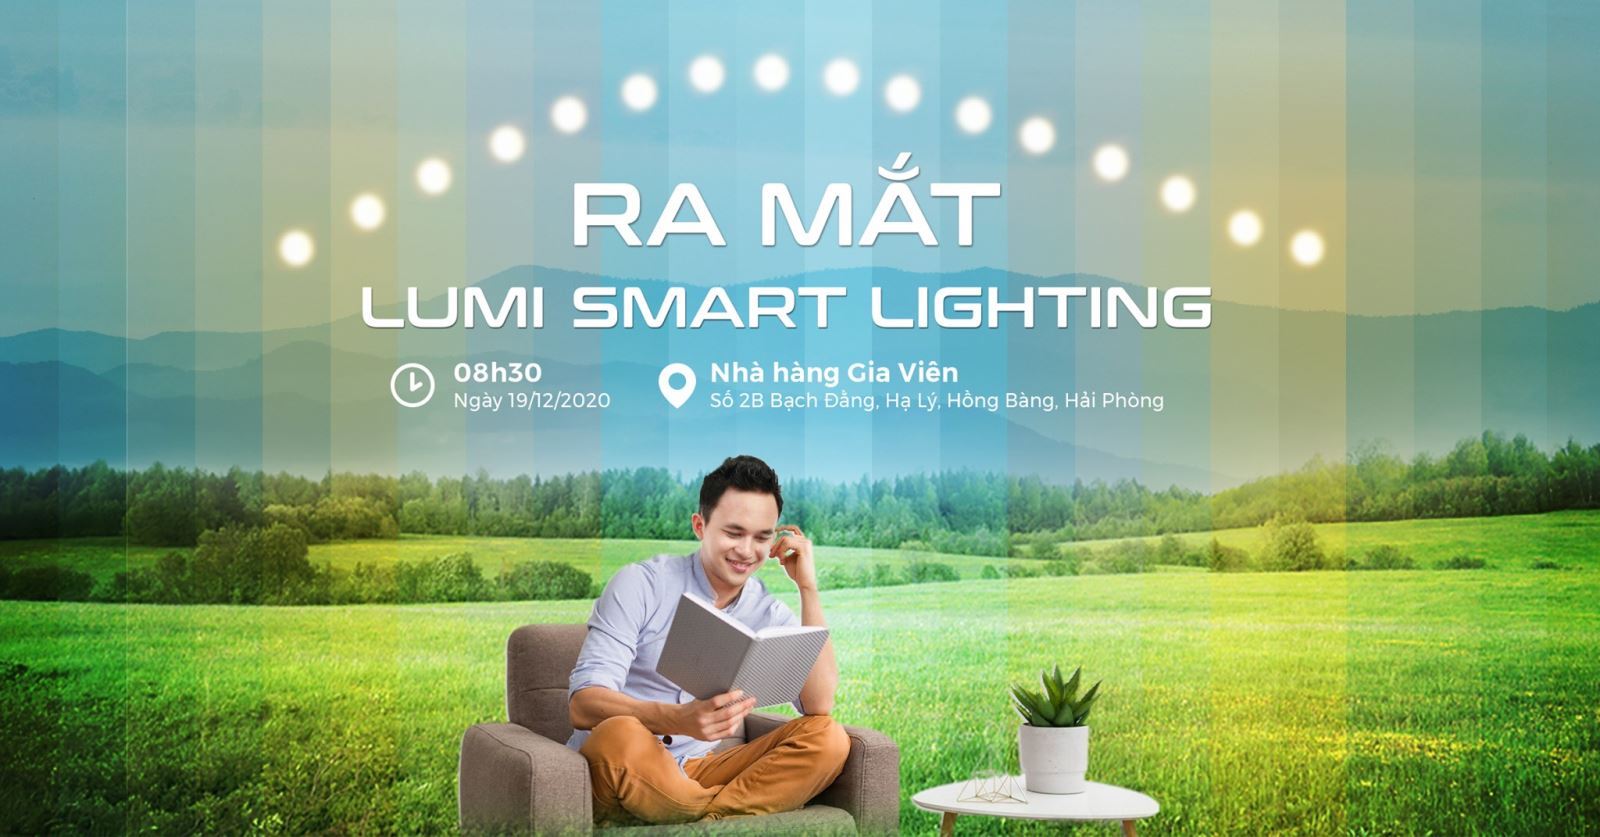 Hải Phòng: Ra mắt giải pháp chiếu sáng thông minh Lumi Smart Lighting - Ảnh 1